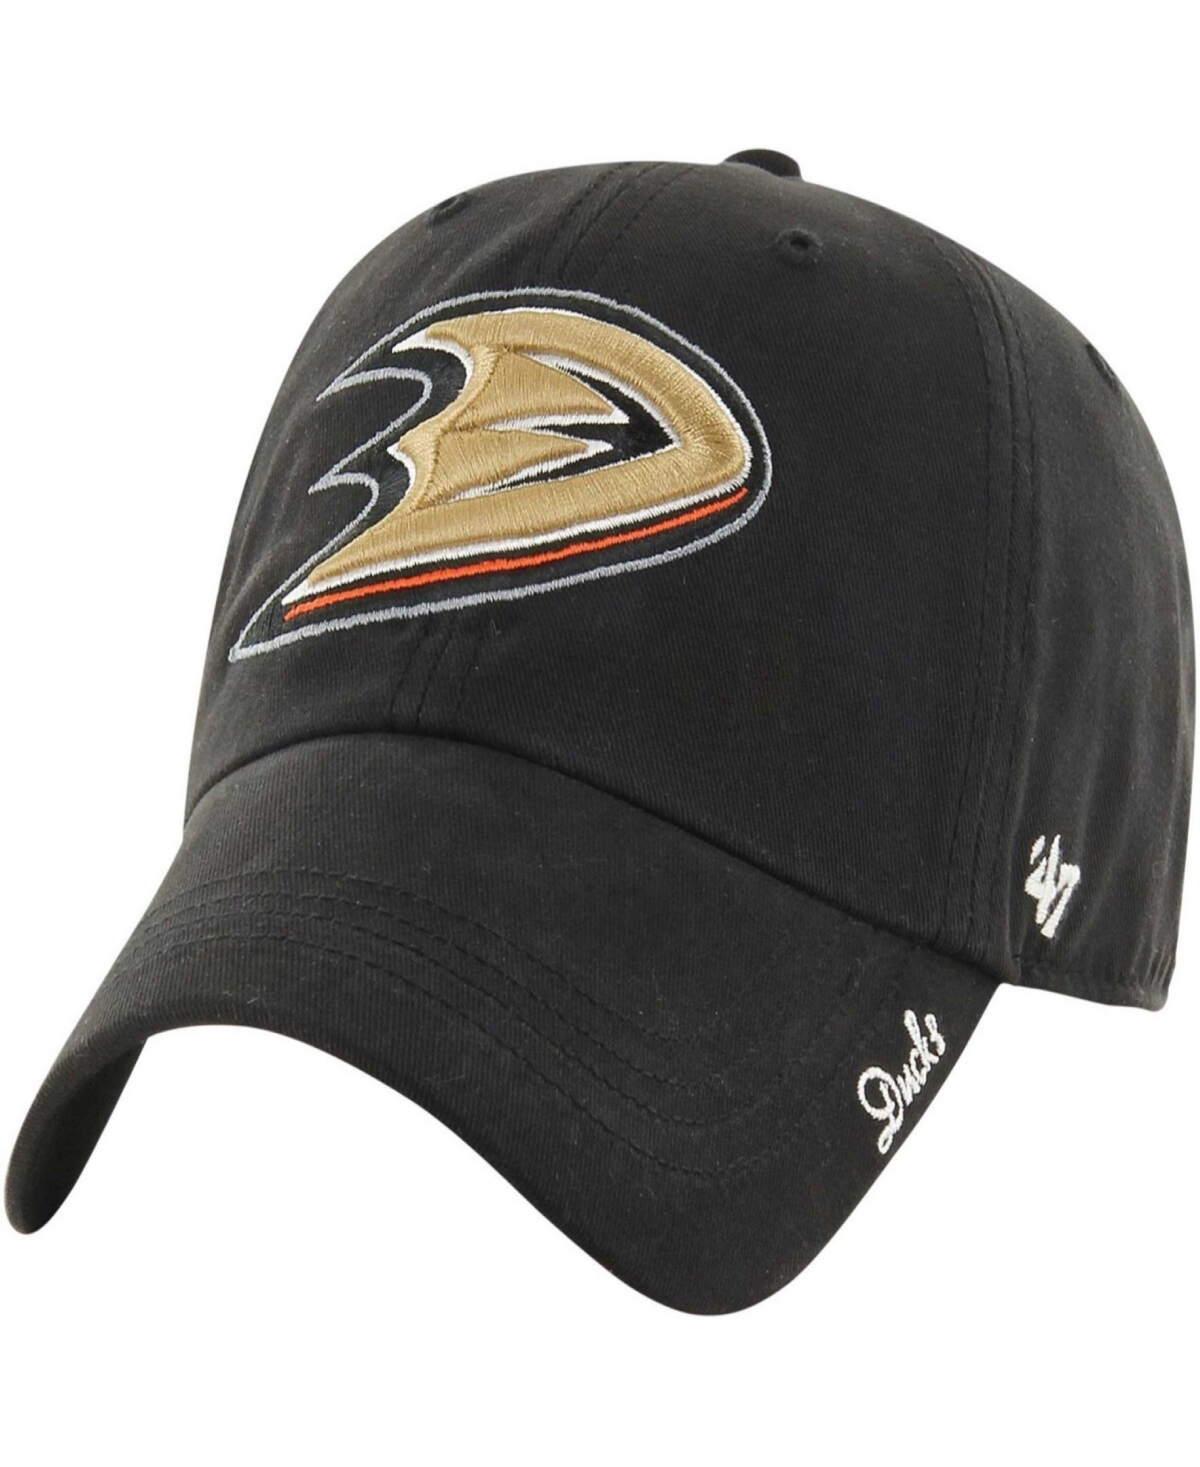 47 Women's Black Anaheim Ducks Miata Clean Up Adjustable Hat - Black